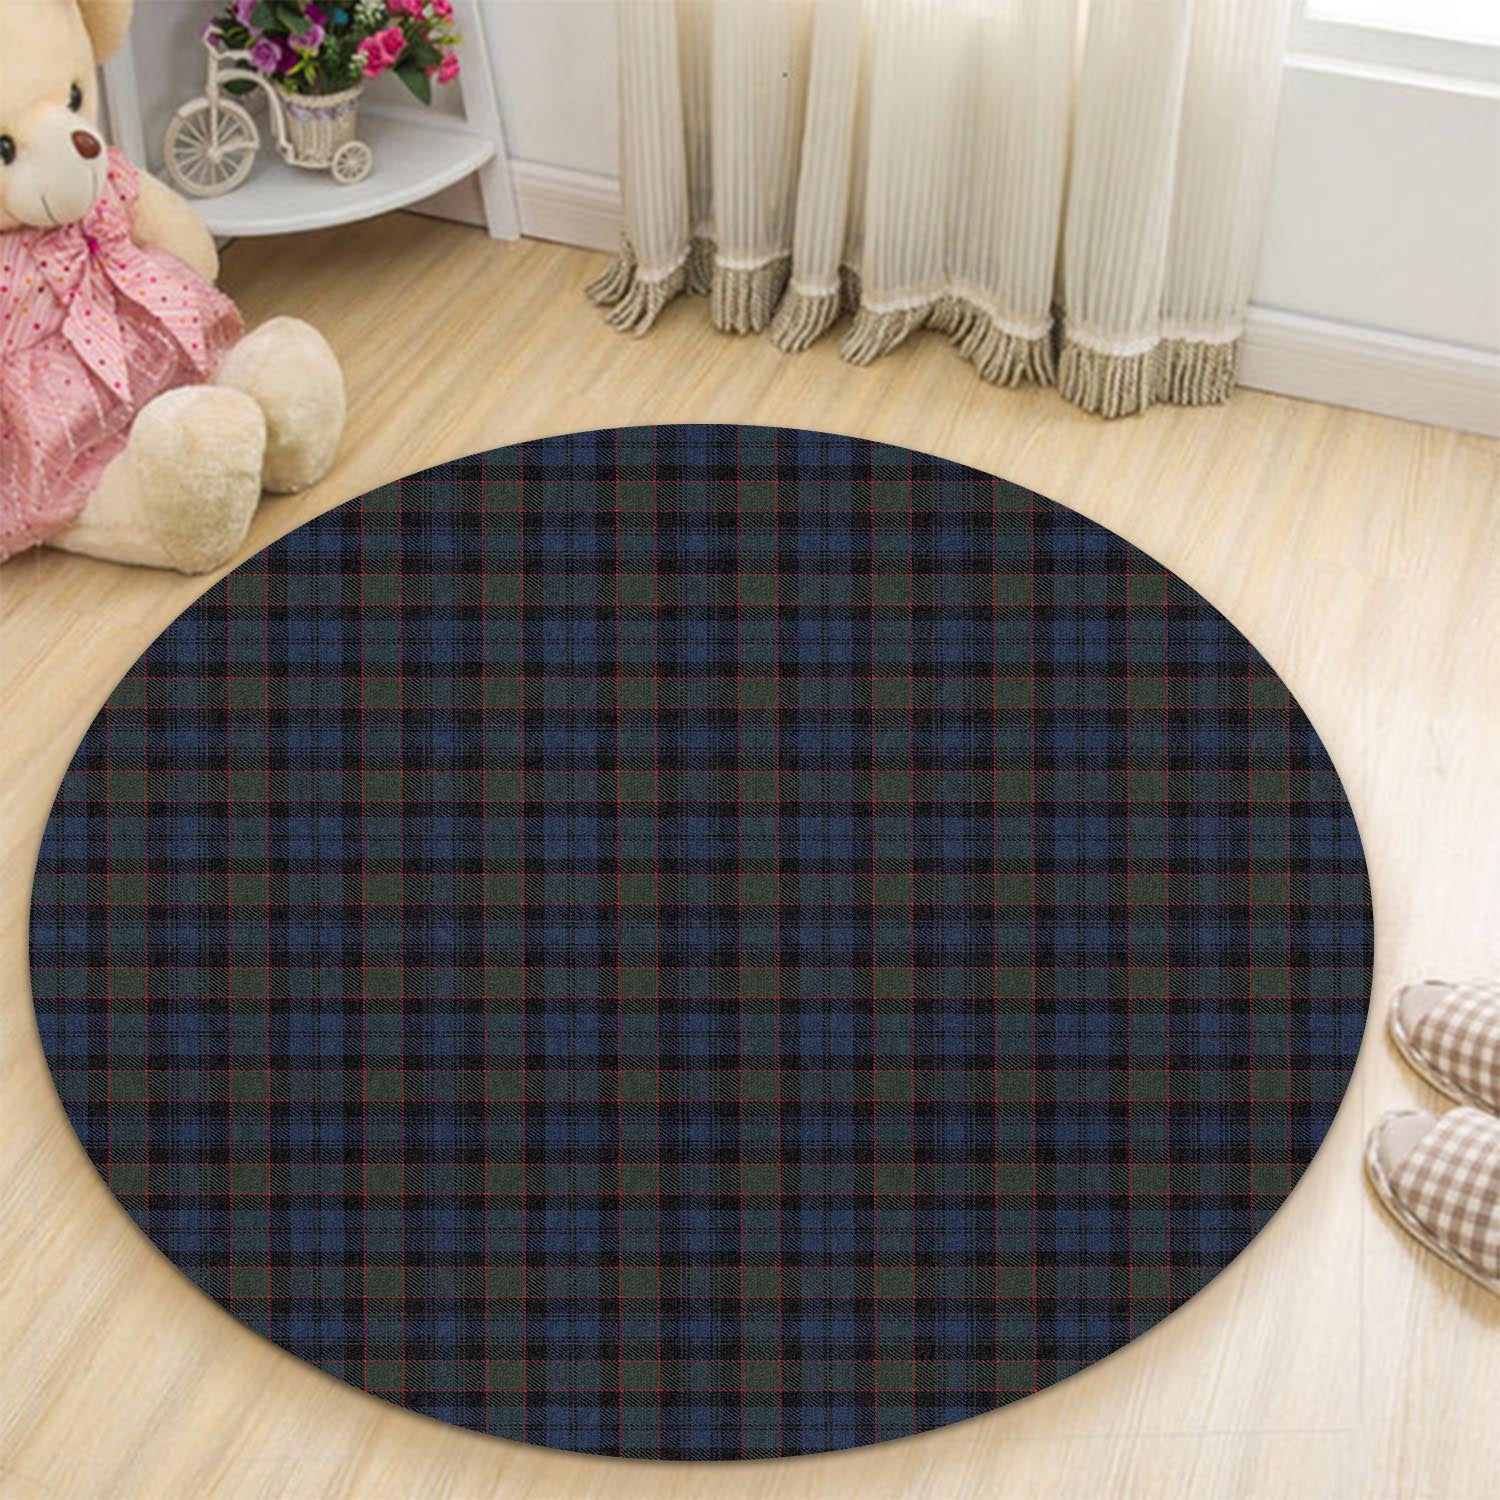 riddoch-tartan-round-rug